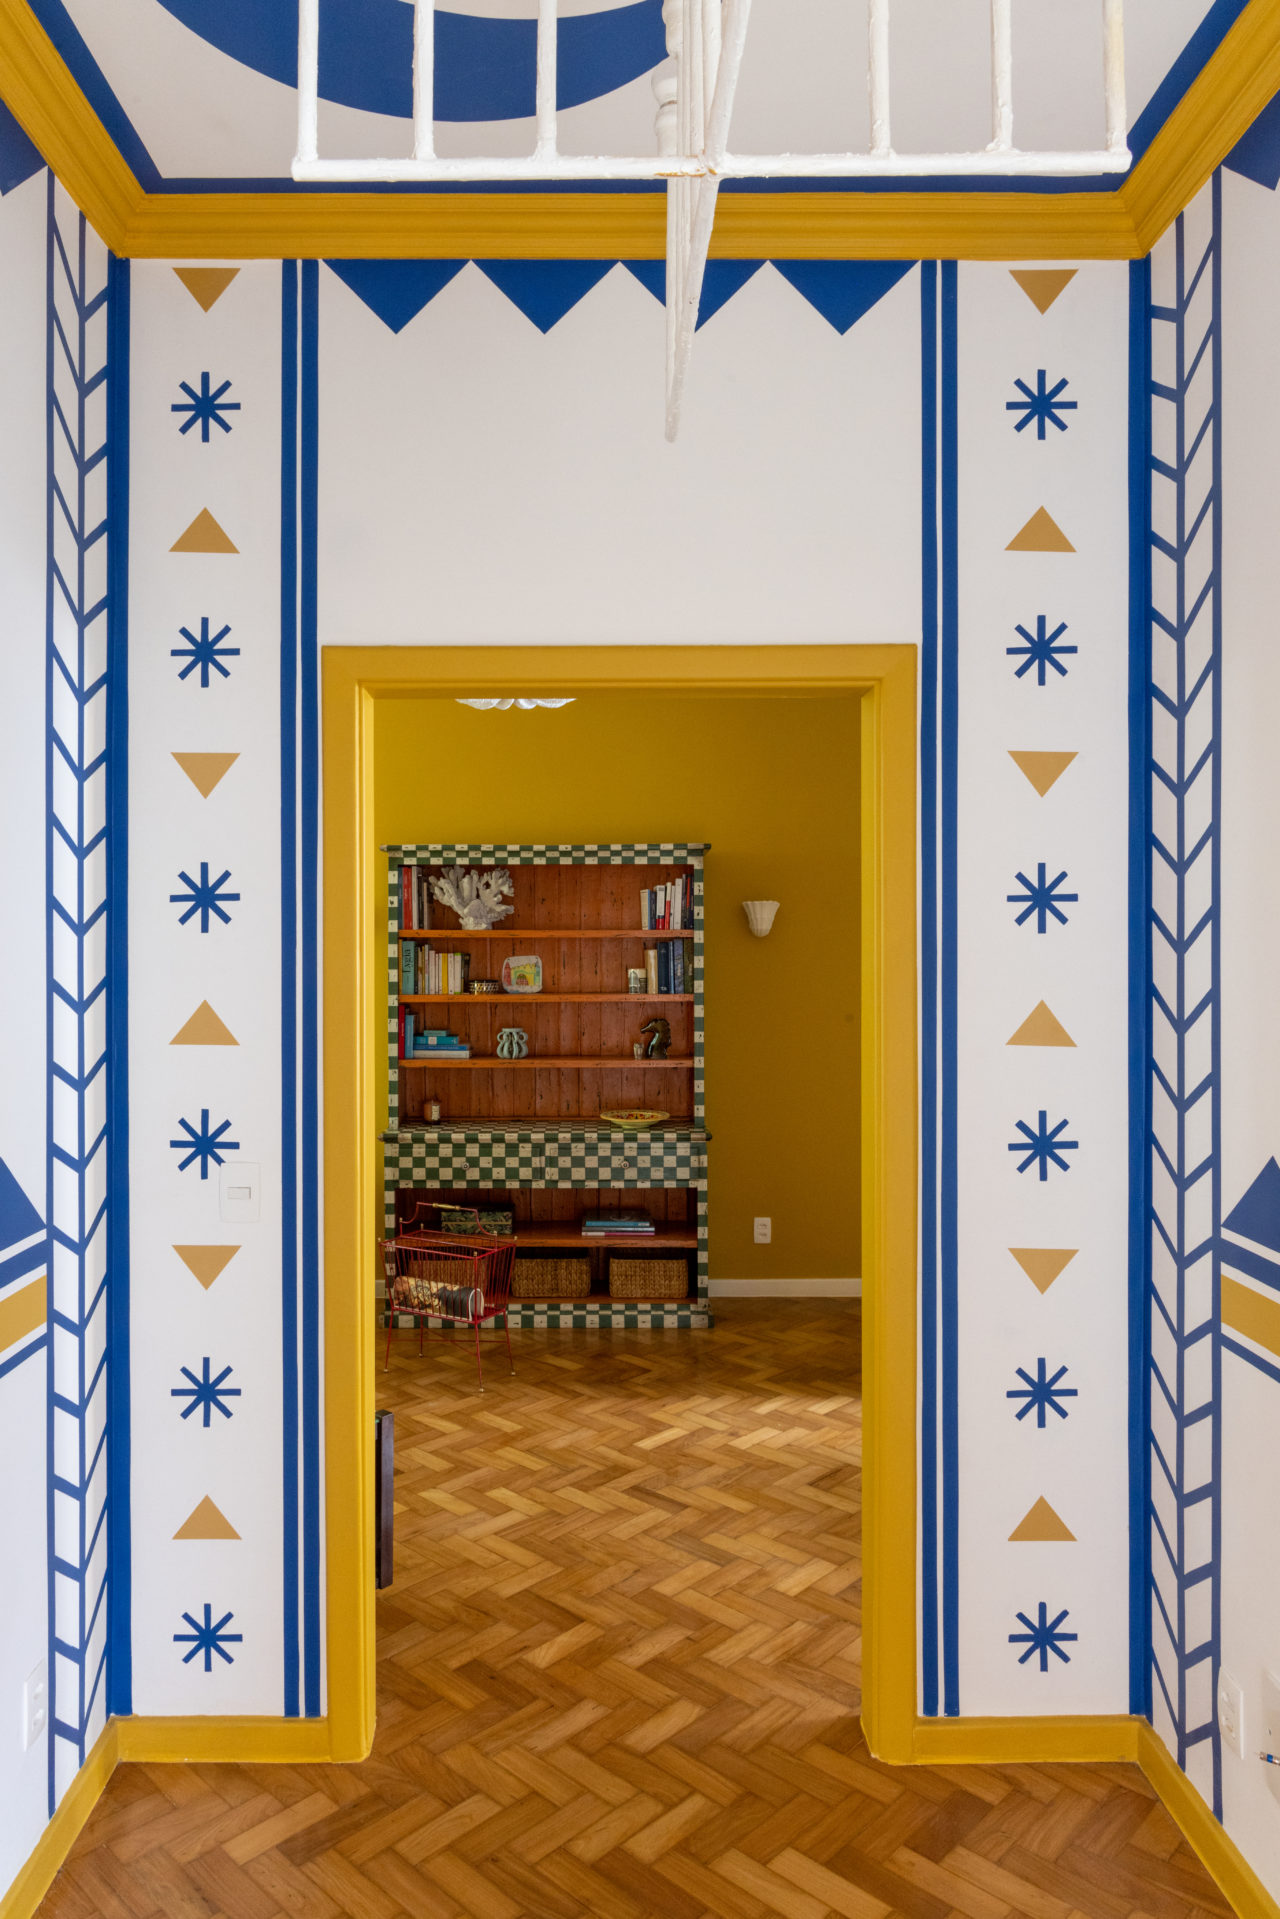 Hall dos quartos com pintura especialm nas cores branco, azul e amarelo.hall dos quartos (não existe corredor) tem inspiração em Calder, Miró e a cultura indígena, uma mistura quase alucinógena, toda desenhada por Jean e que traz mais alegria ainda ao apartamento.